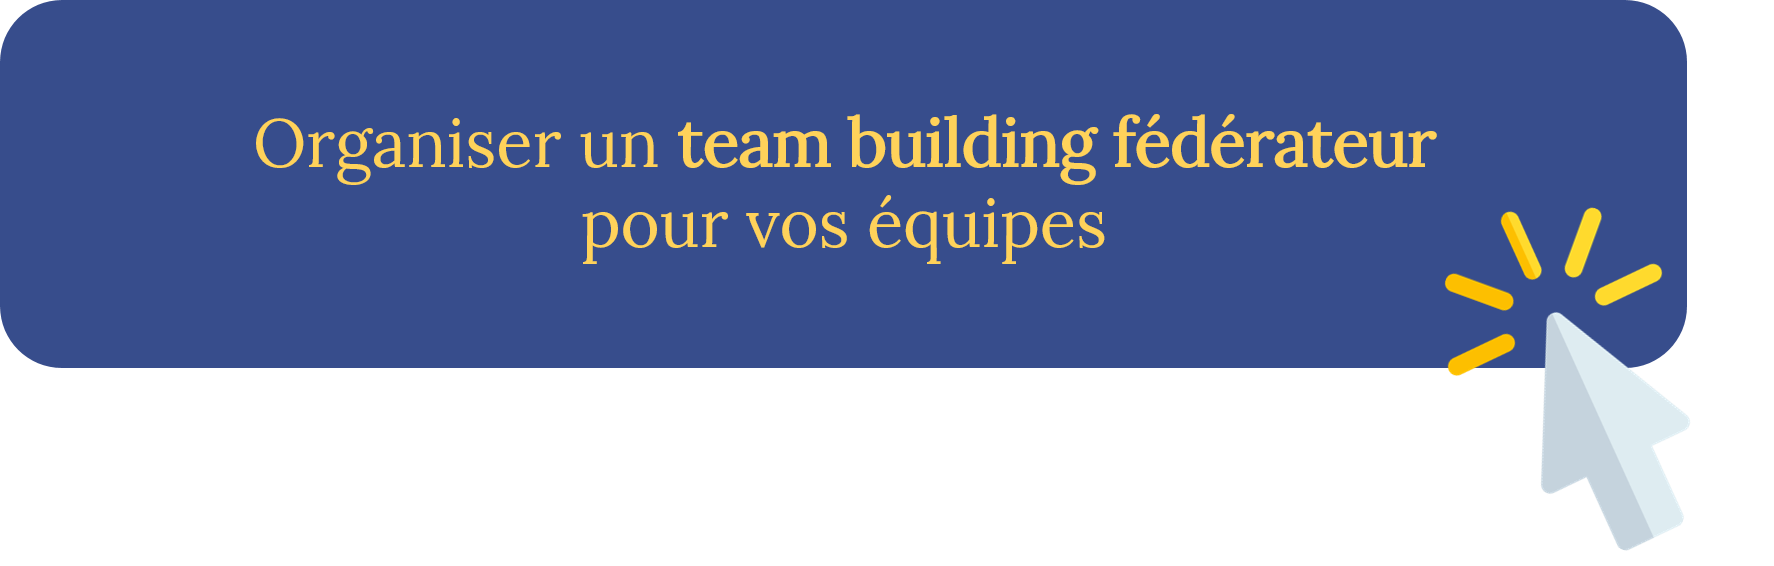 Organiser un team building fédérateur pour vos équipes avec Châteauform'